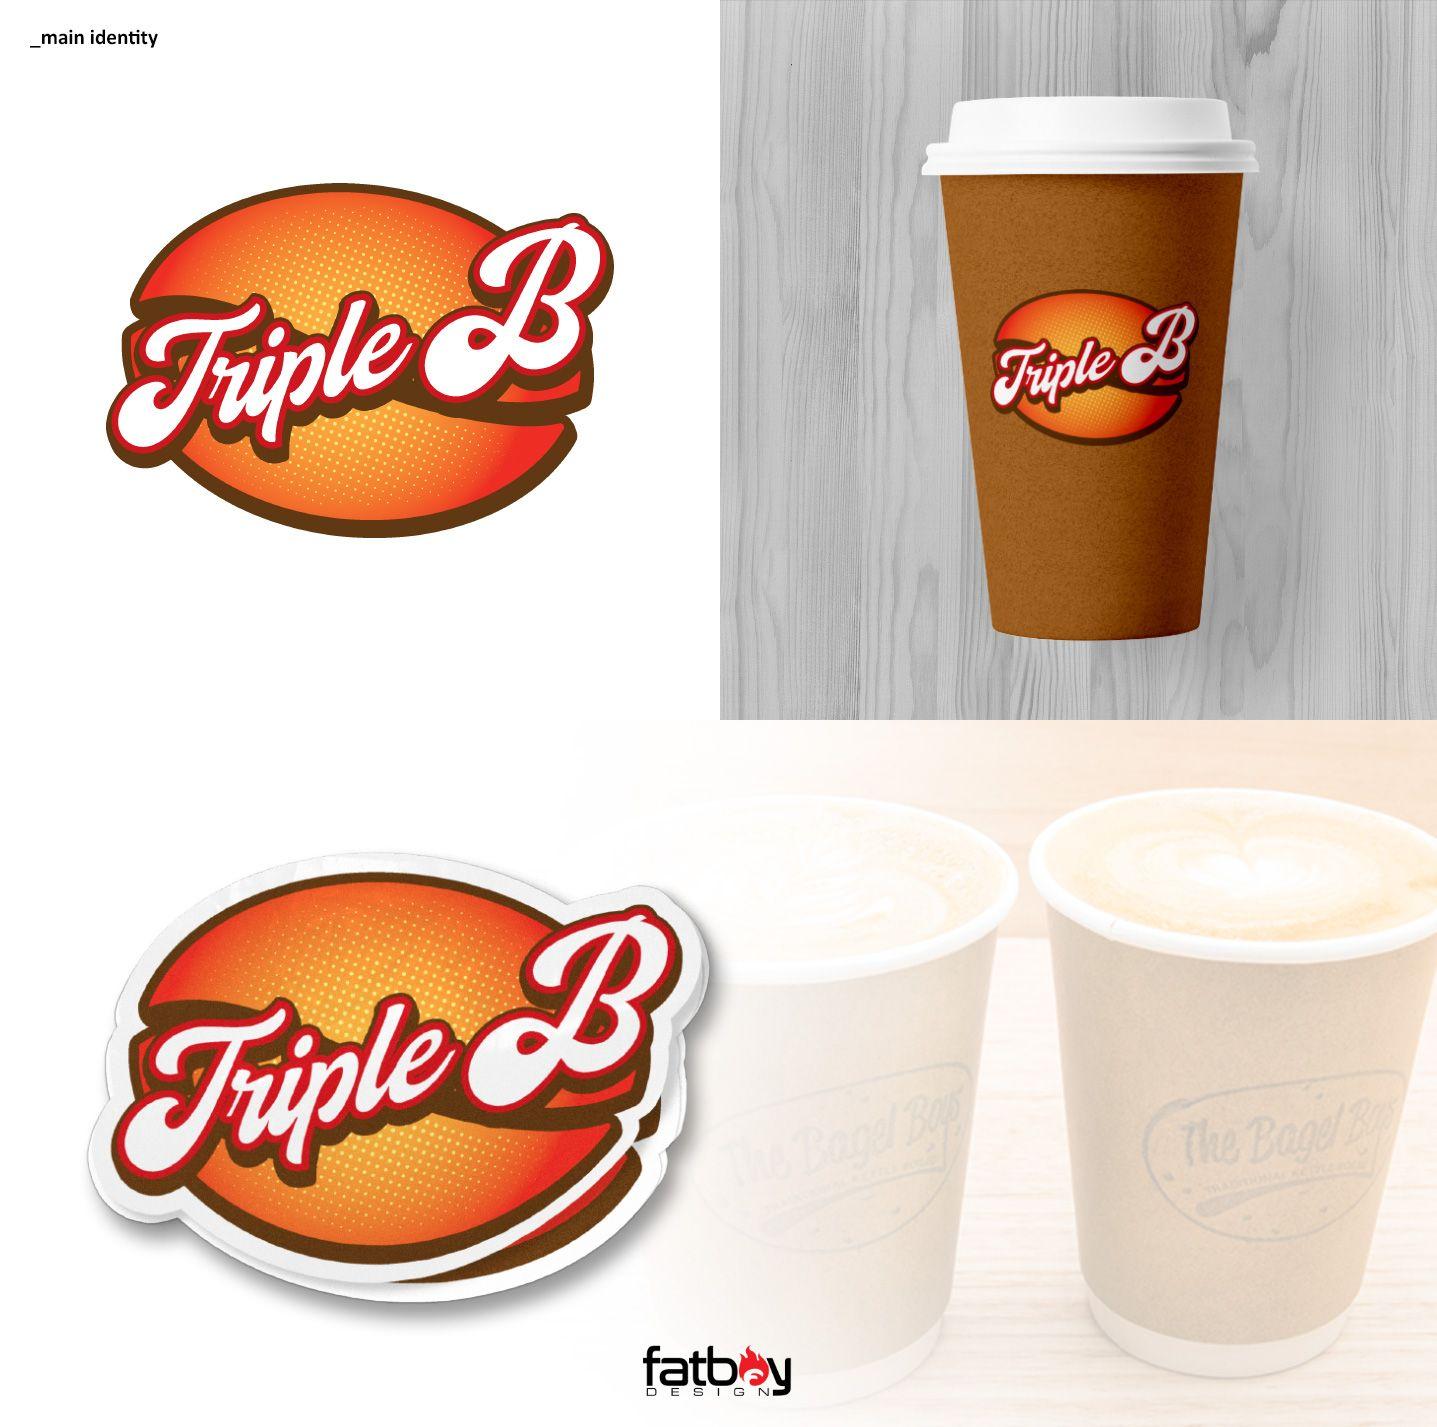 Fatboy Logo - Logo Design for Triple B or BBB by Fatboy Design. Design